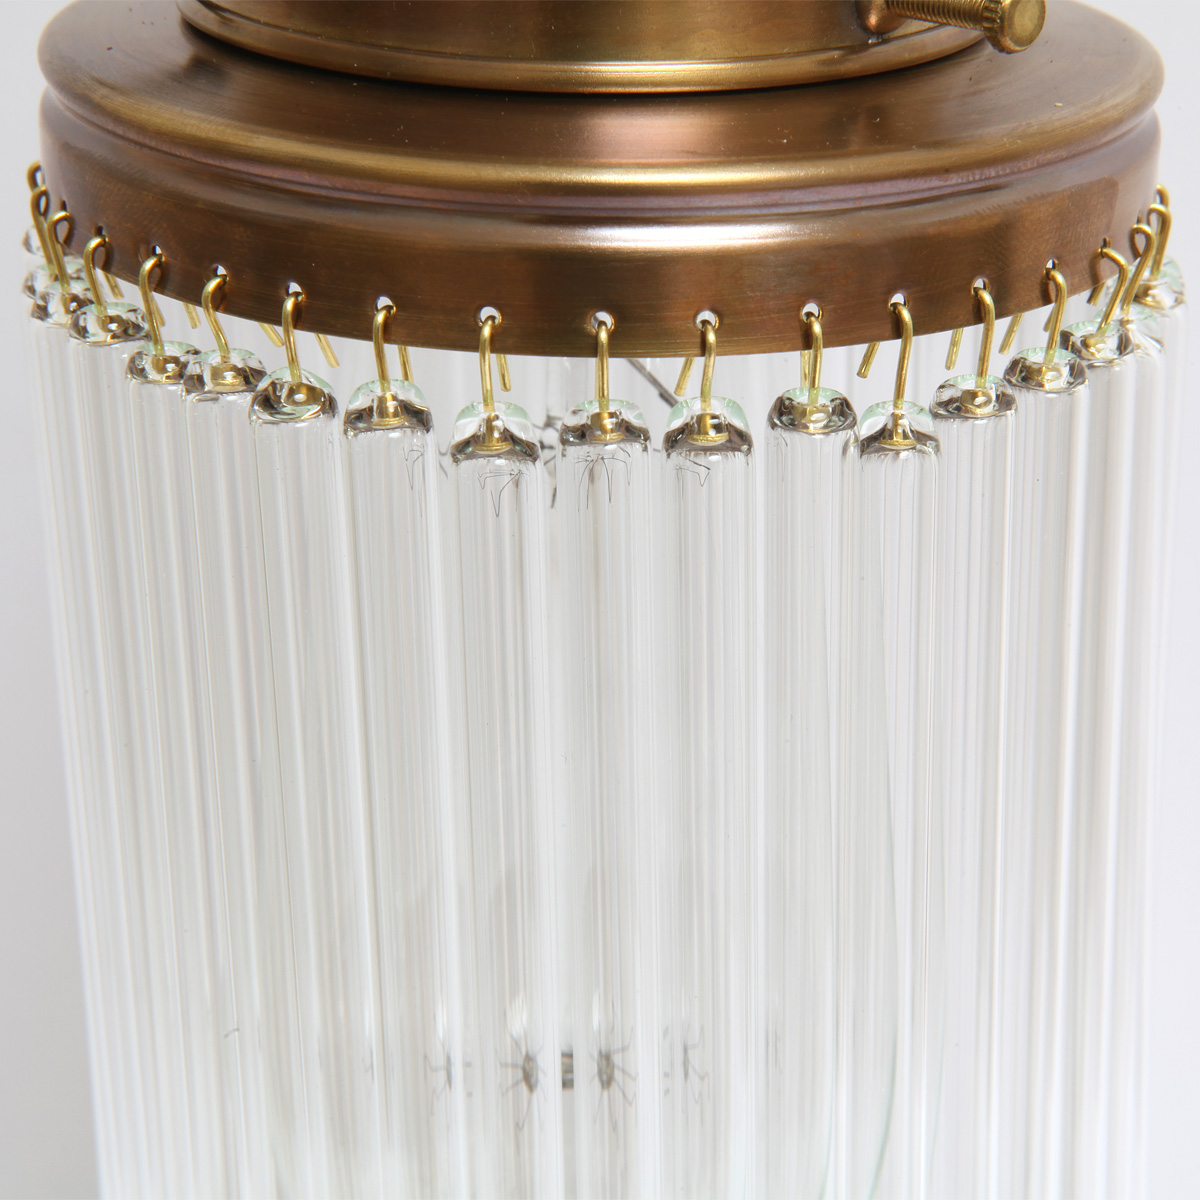 Stile Floreale-Kristallglas-Wandlampe VENEZIA I: Filigrane Kristall-Glasstäbchen sorgen für eine interessantes Lichtspiel (Ausführung handpatiniert-Altmessing)